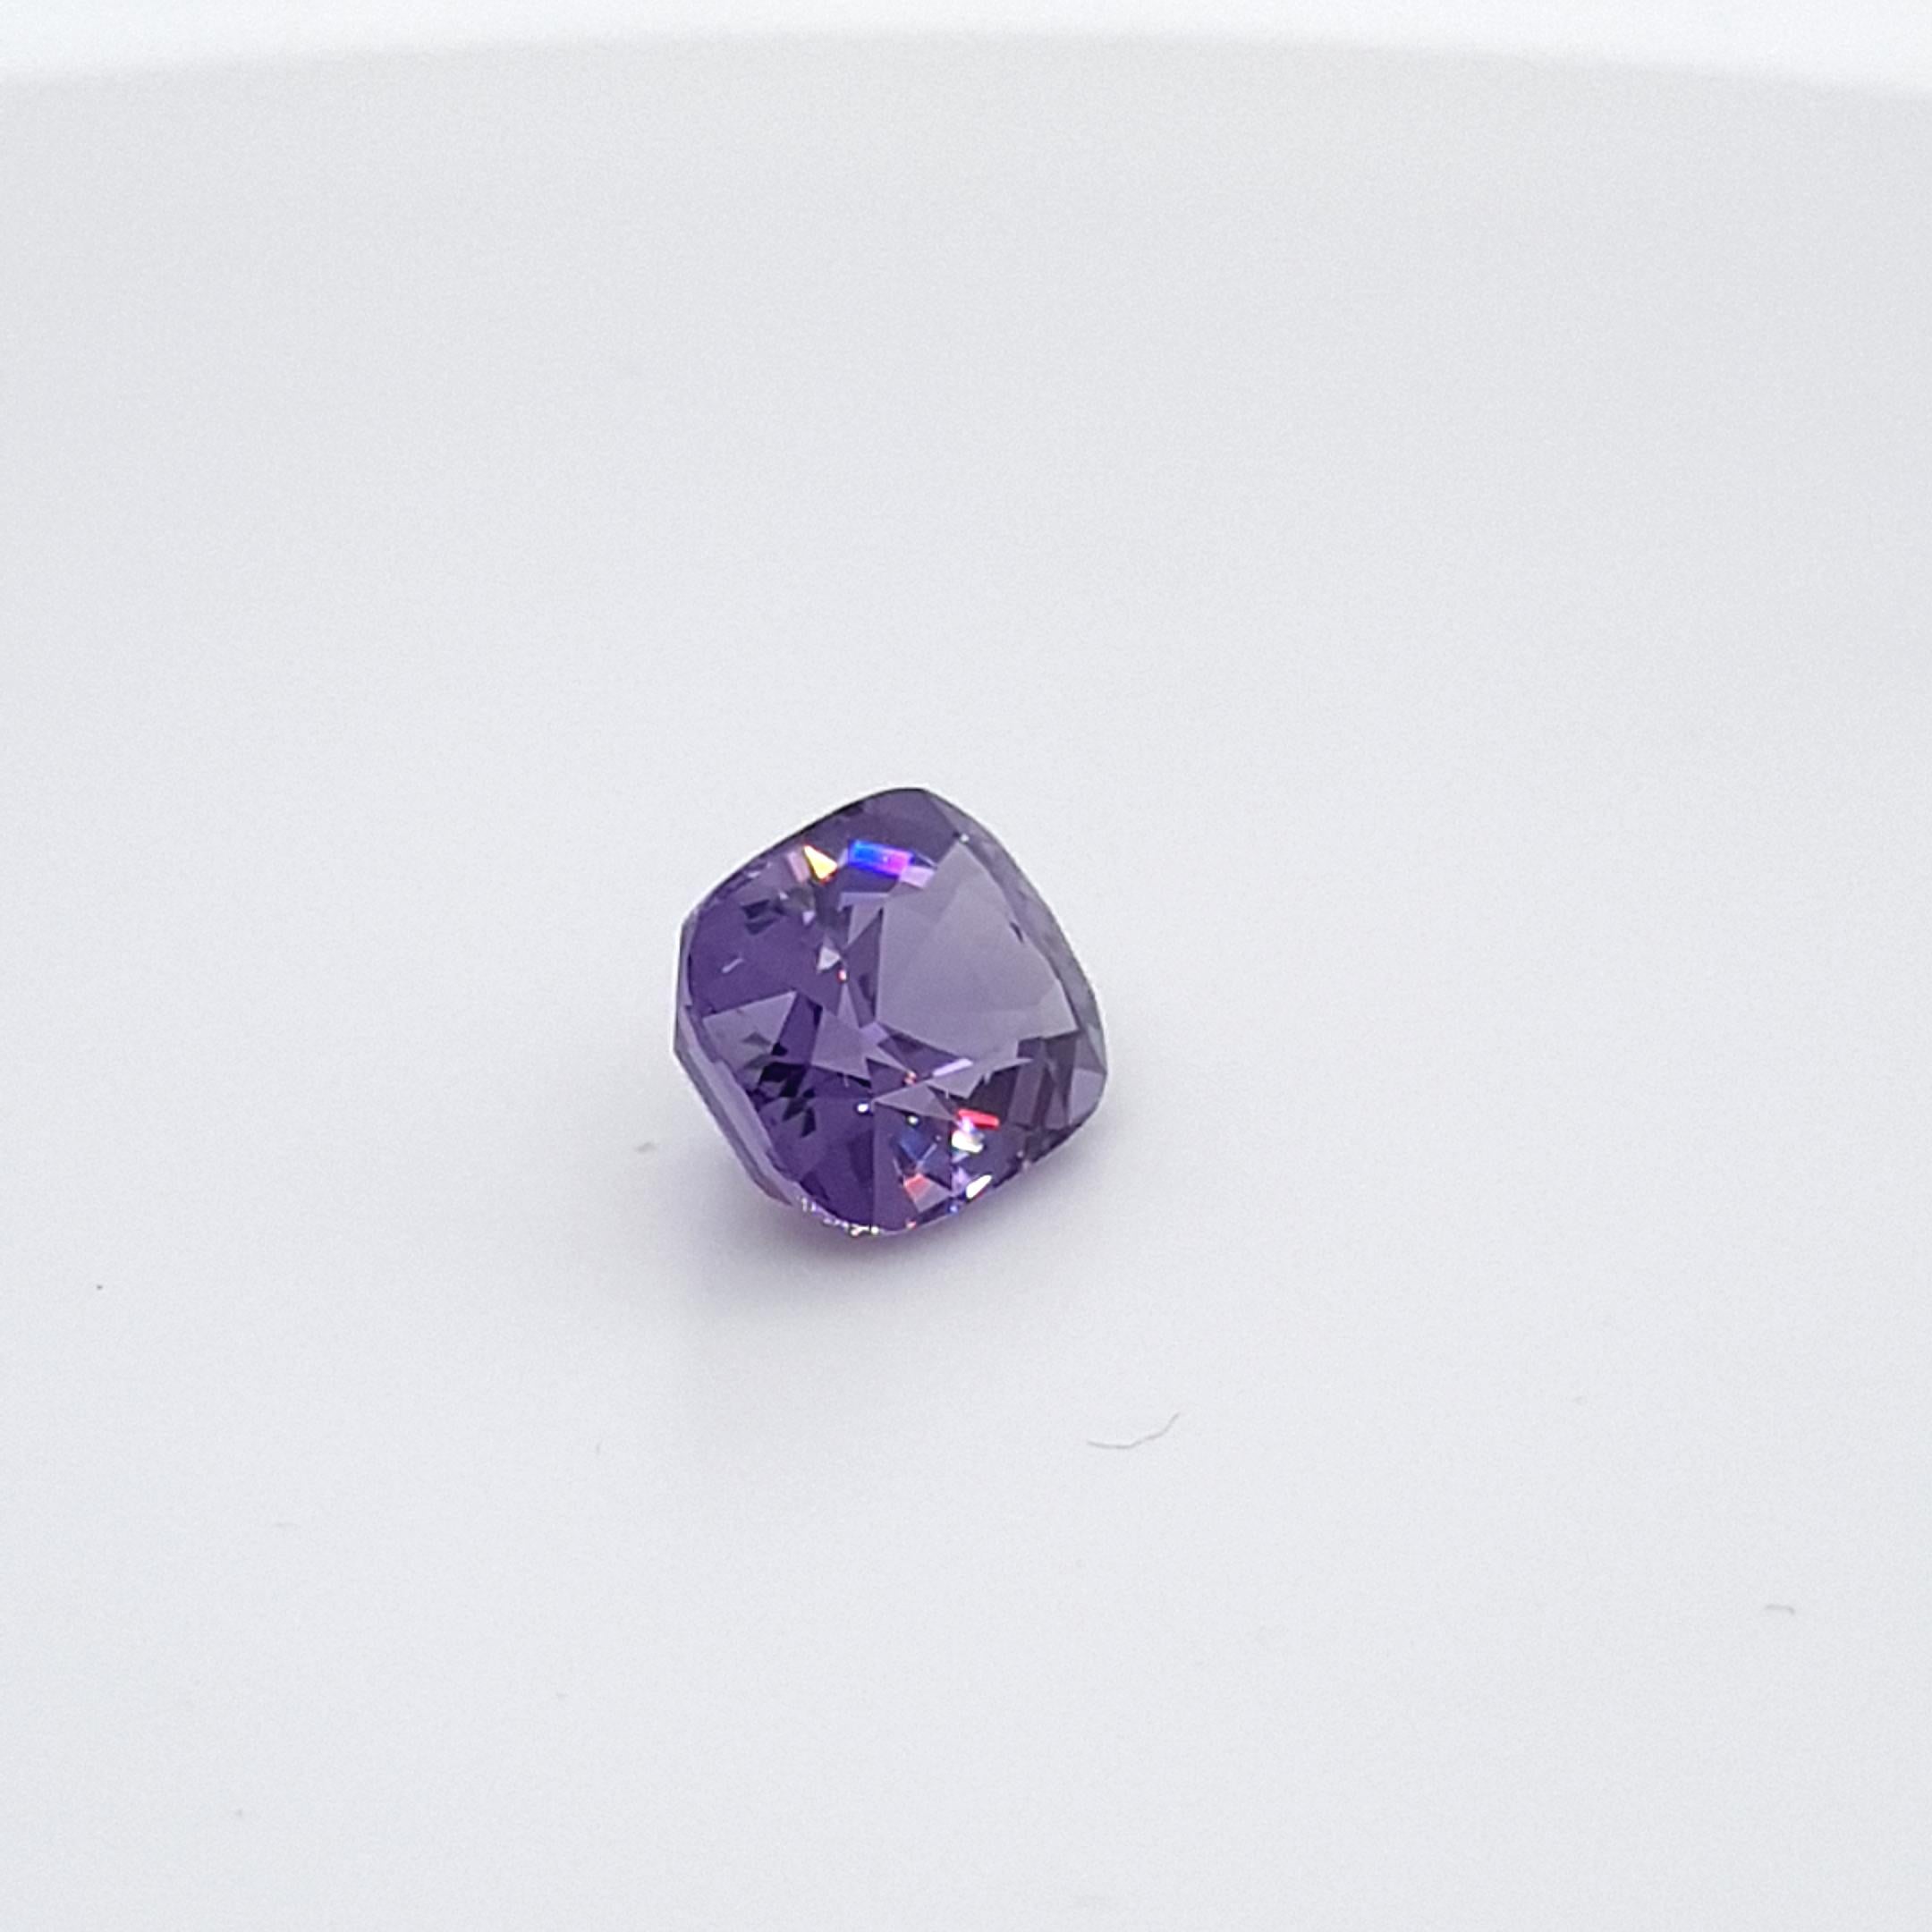 Contemporary Violet Spinel, Faceted Gem, 4, 63 Ct., Loose Gemstone For Sale